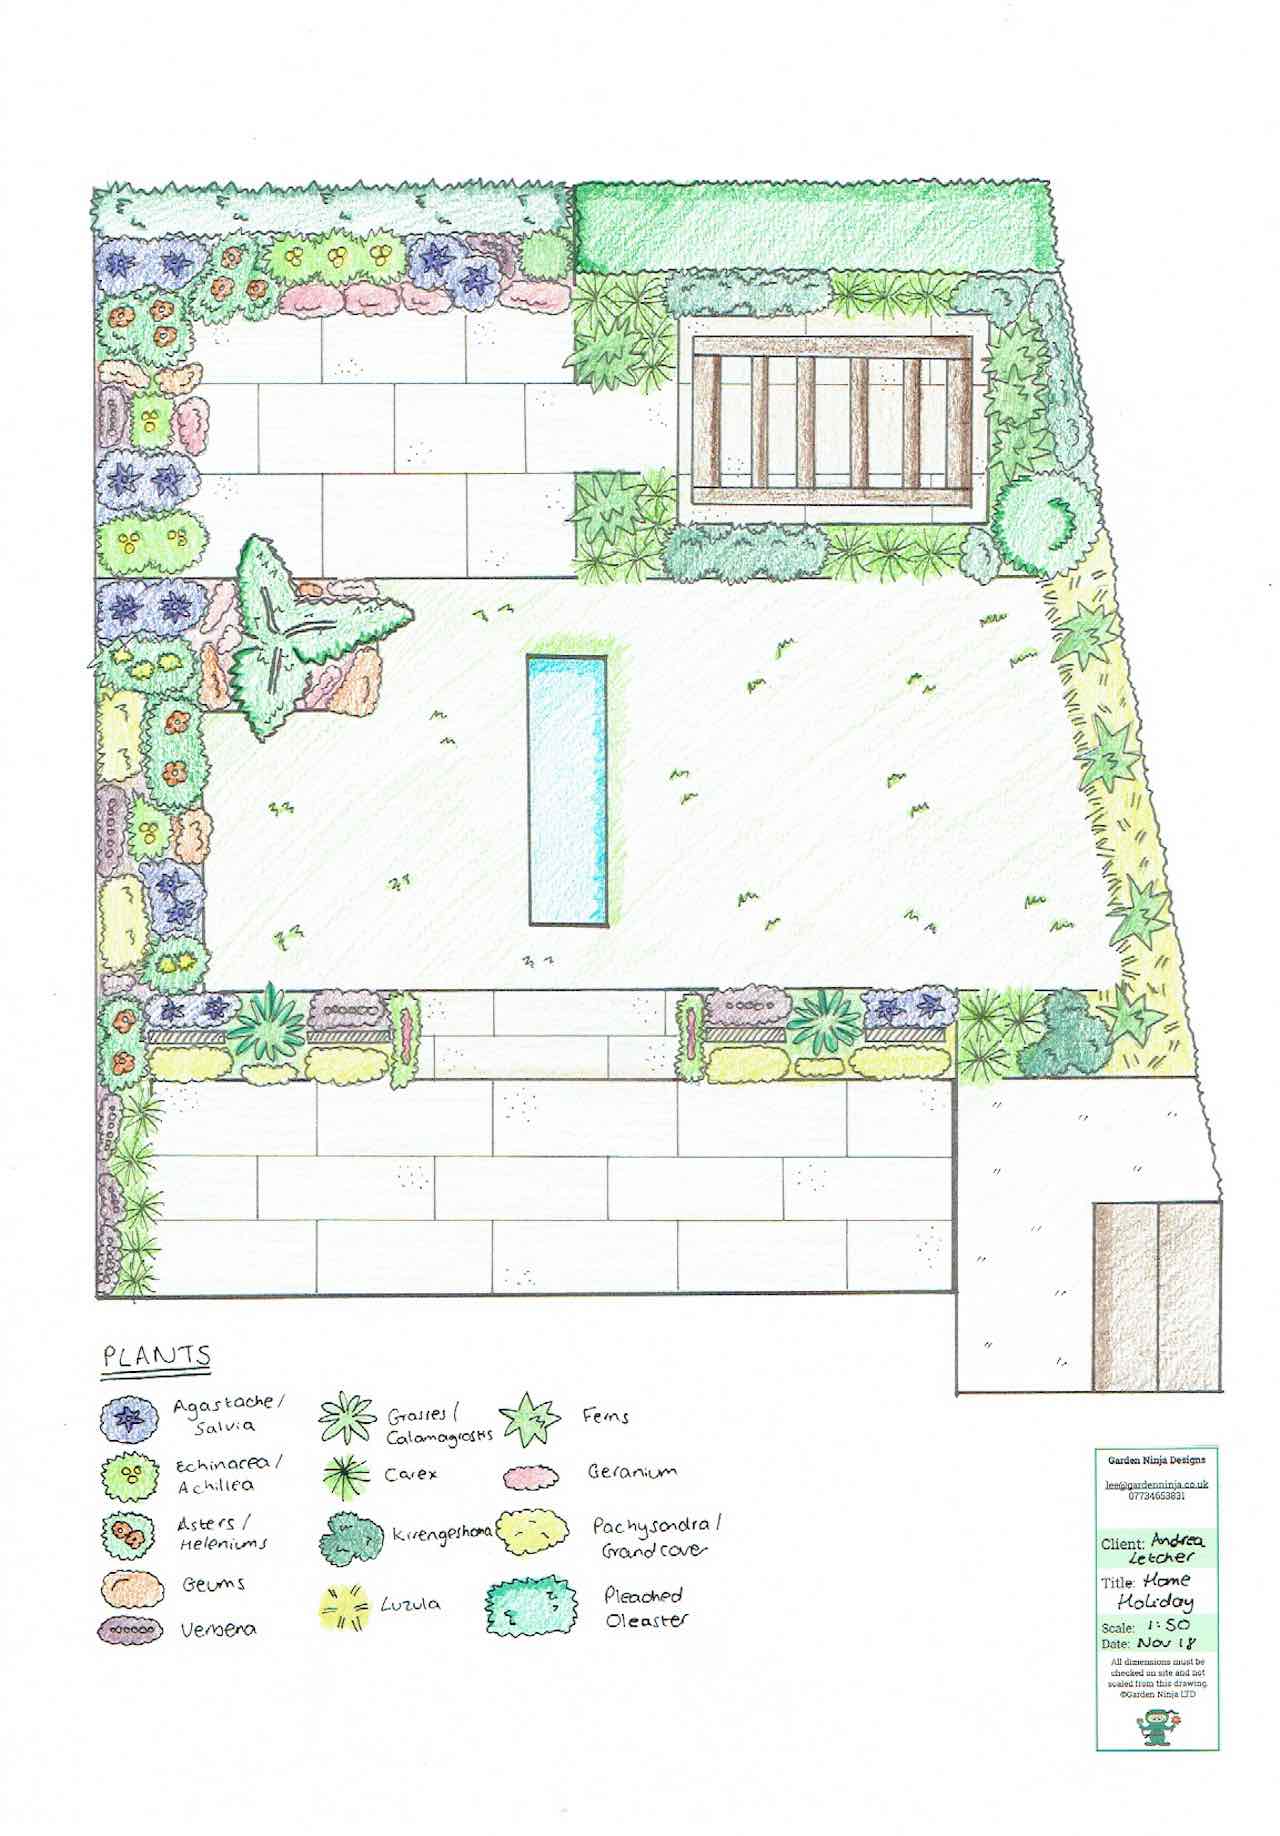 A plan view of a contemporary garden design by Garden Ninja